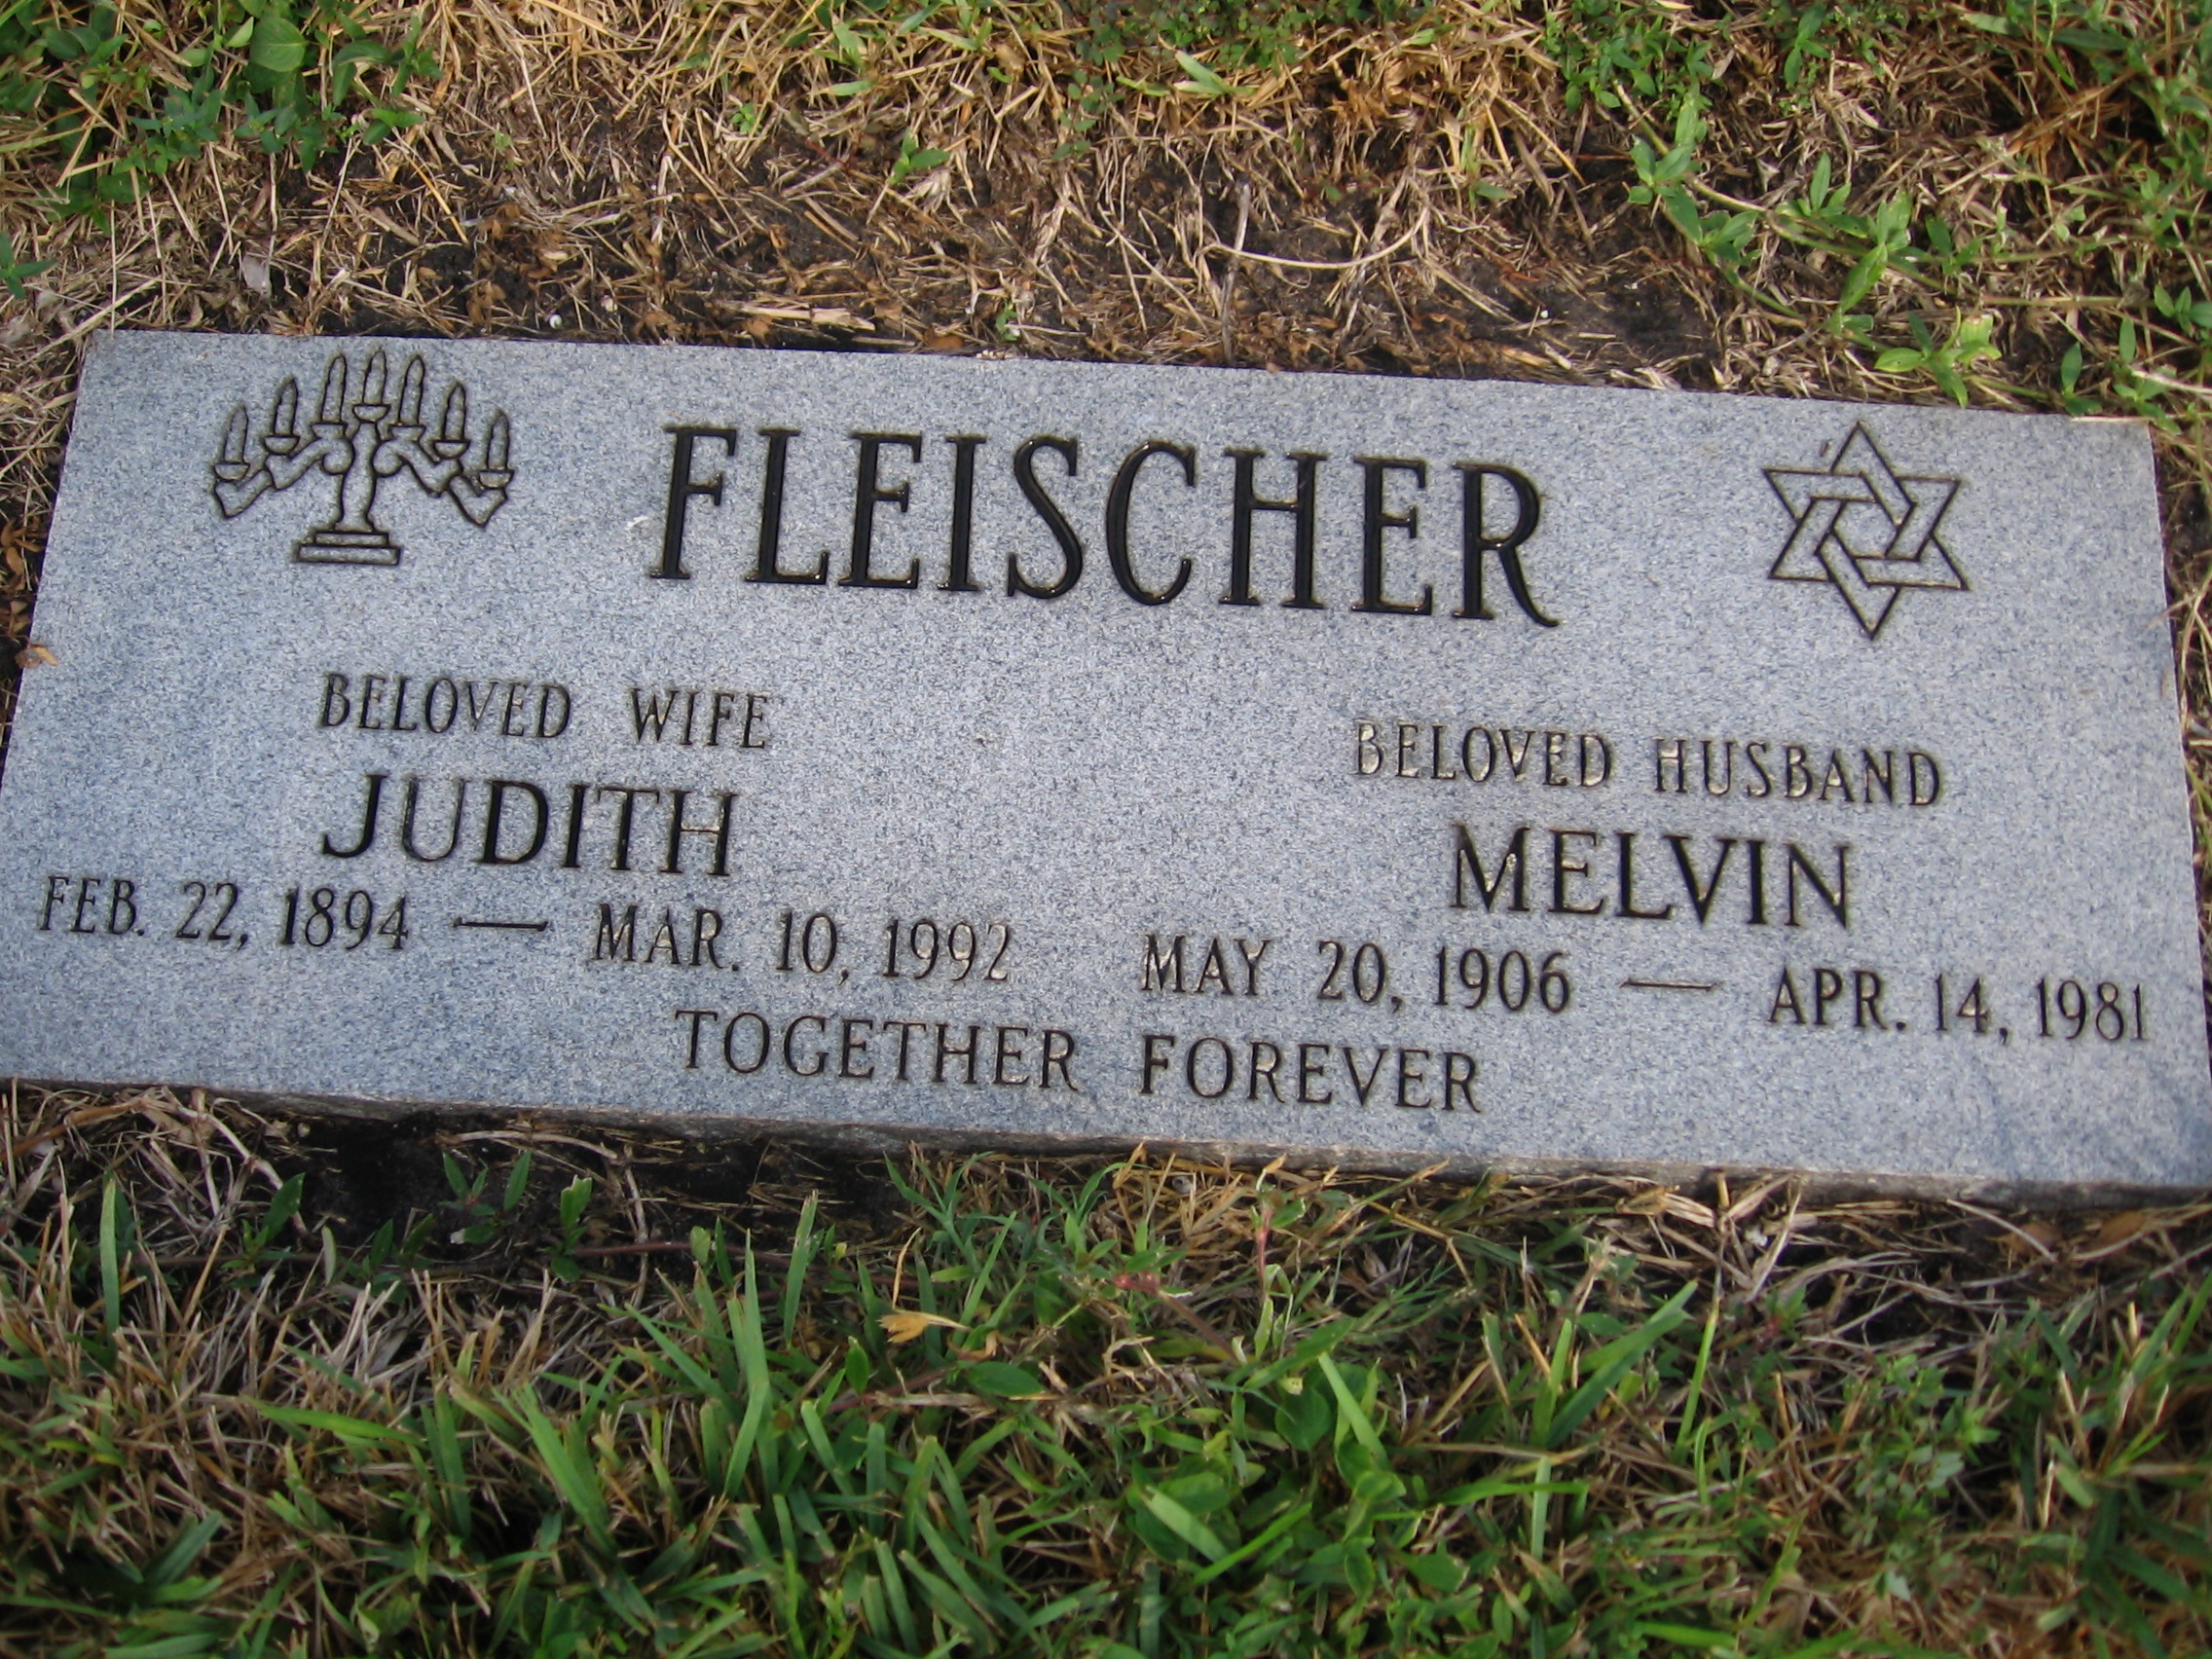 Judith Fleischer